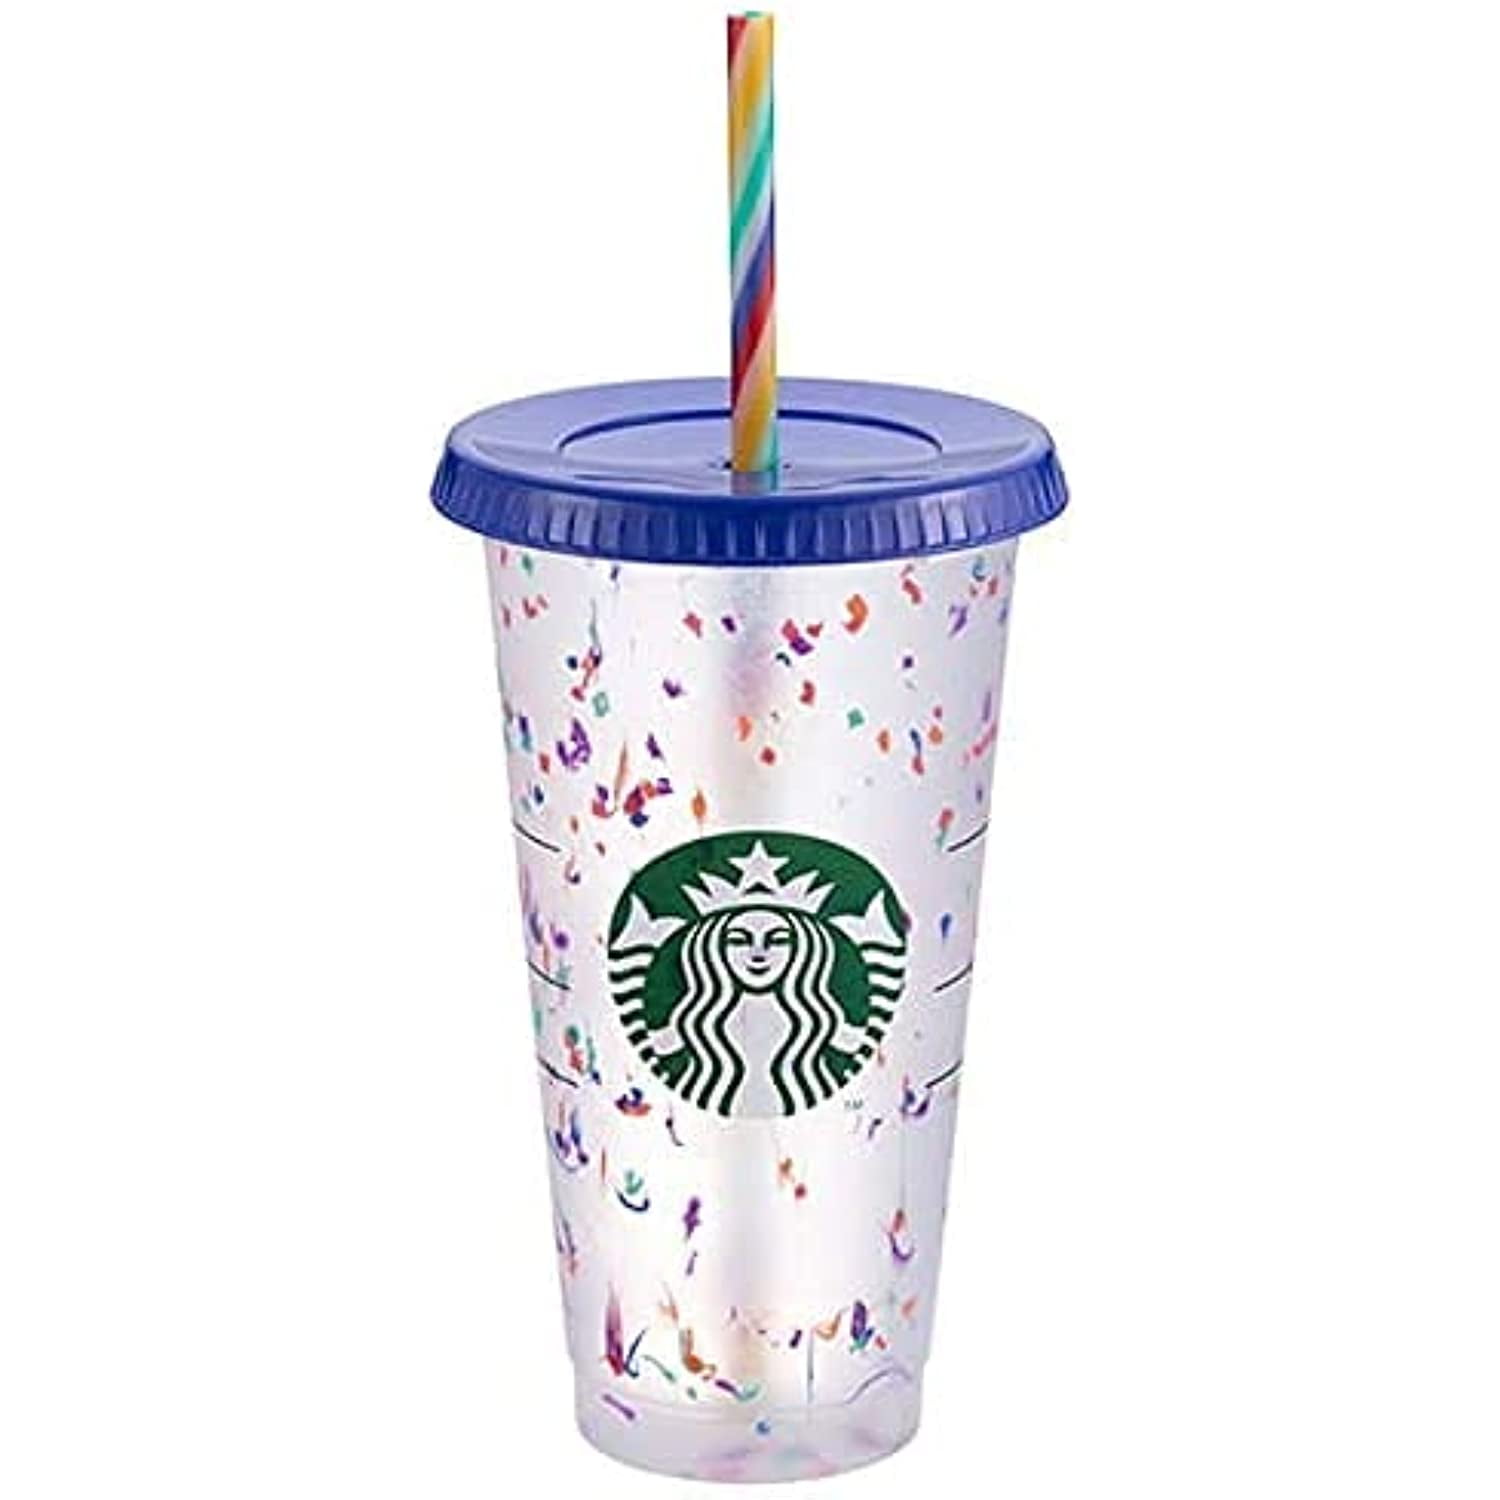 Starbucks Coffee Colorful Straw Set Of 4 Straws Rainbow Stripes Straw